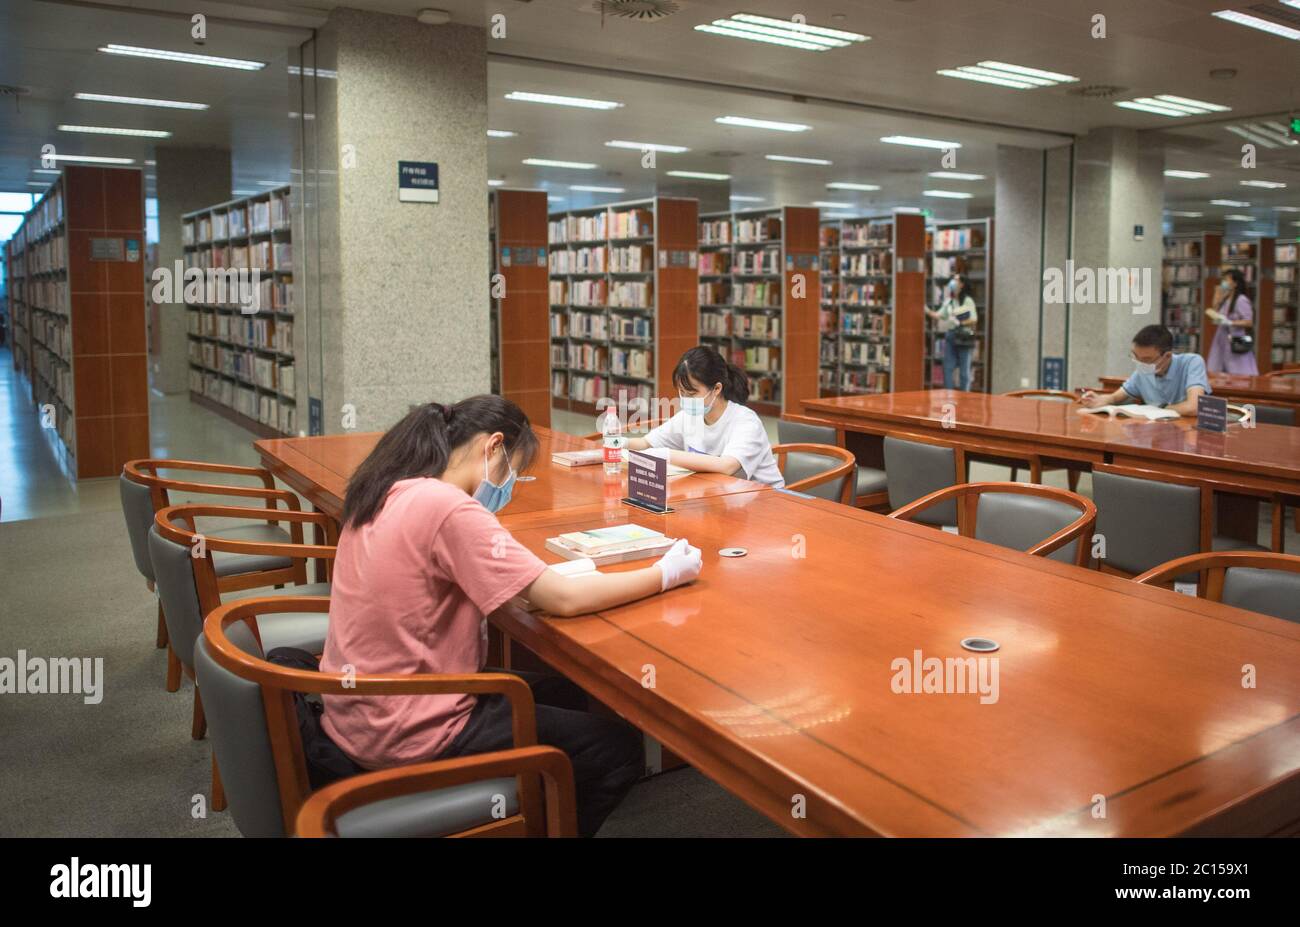 (200614) -- WUHAN, 14 giugno 2020 (Xinhua) -- persone che leggono a distanza l'una dall'altra presso la Biblioteca Provinciale Hubei di Wuhan, capitale della provincia di Hubei, in Cina centrale, 14 giugno 2020. La provincia cinese di Hubei, una volta duramente colpita dal COVID-19, domenica ha riaperto cinque importanti luoghi culturali pubblici nell'ultima mossa per tornare alla normalità dopo che l'epidemia si è ridotta. I luoghi di ritrovo includono il museo provinciale, la biblioteca provinciale, la sala commemorativa della rivoluzione Xinhai, il museo d'arte provinciale e il centro d'arte di massa, tutti situati nella capitale provinciale Wuhan. Tutte e cinque le strutture Foto Stock